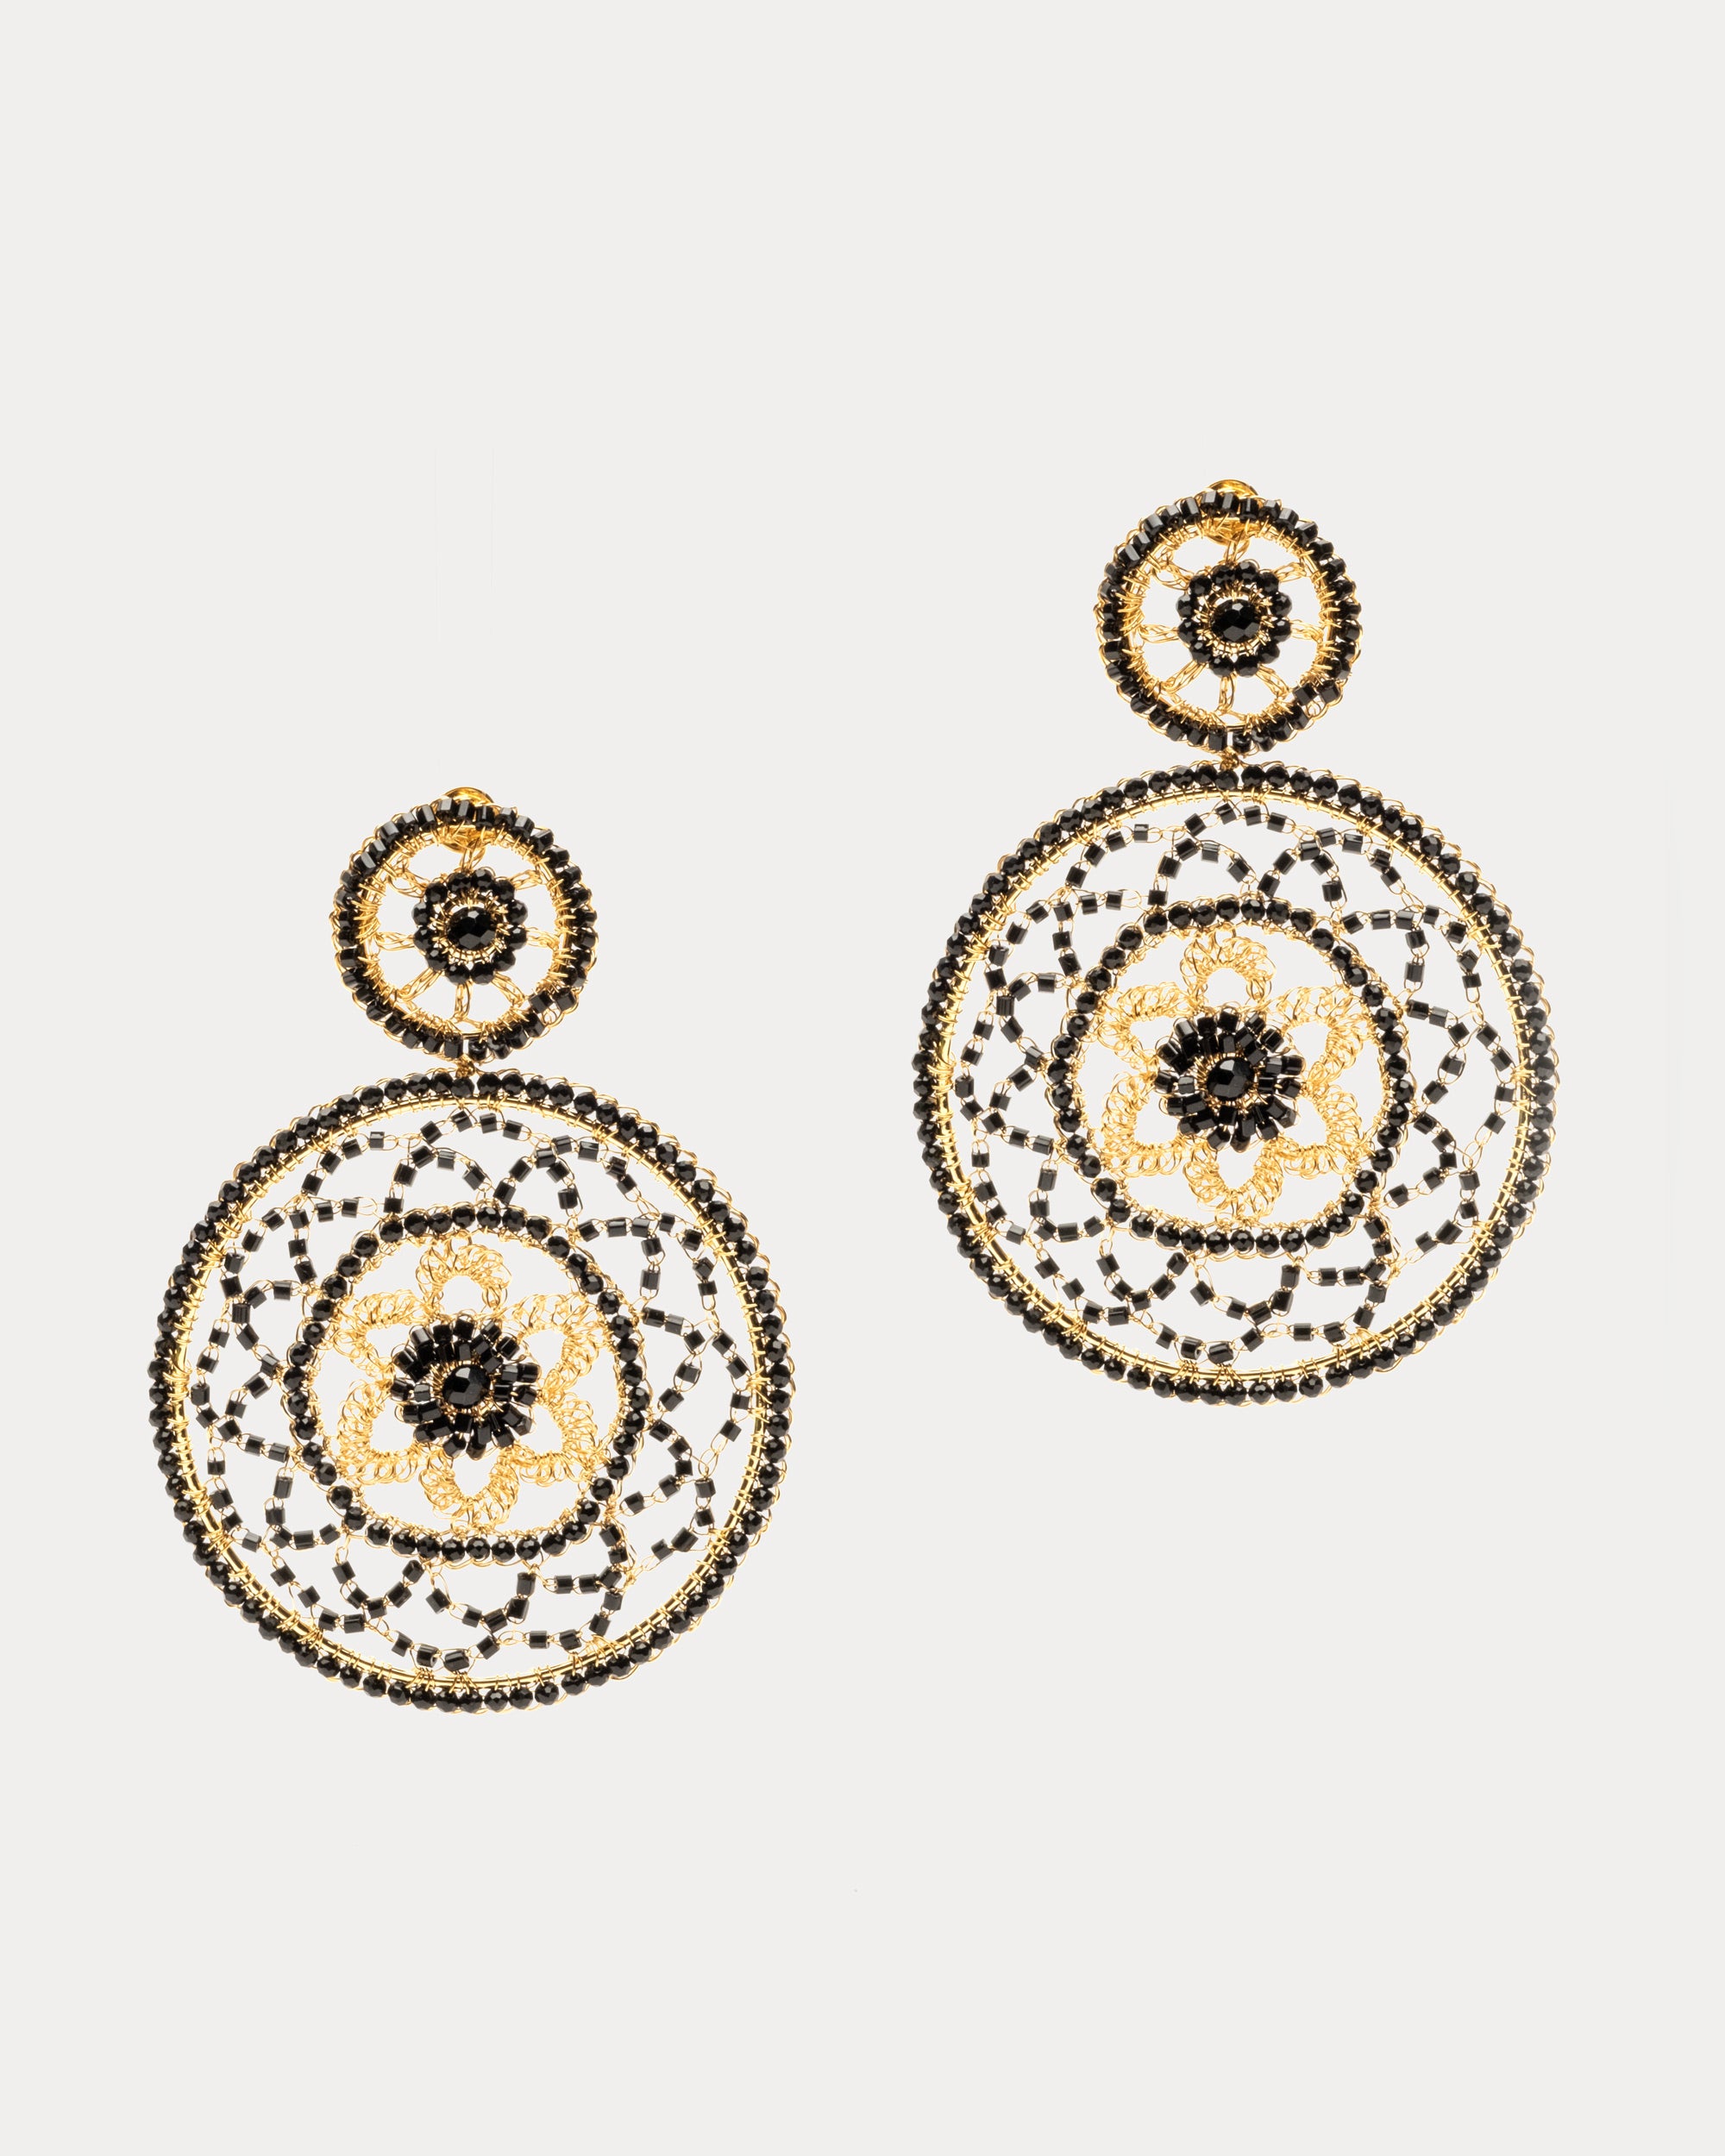 Large Crochet Dream Catcher Earrings Gold Black